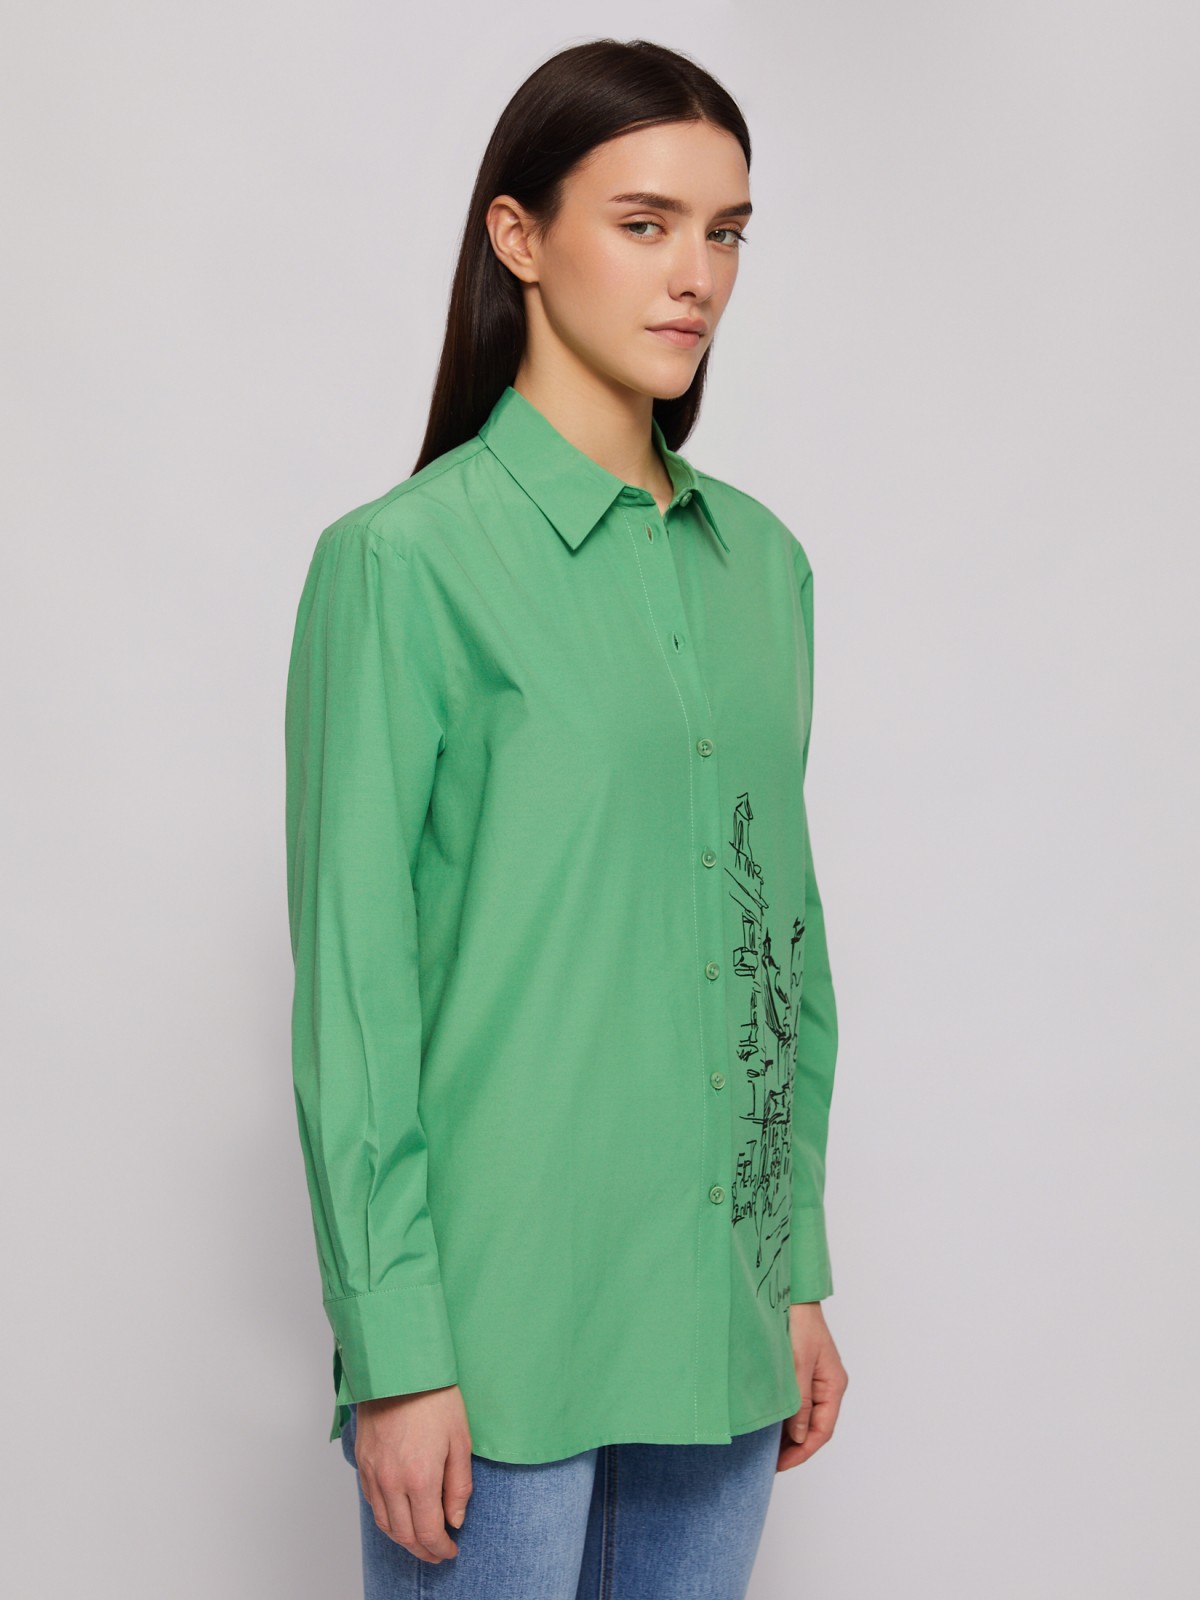 Рубашка прямого фасона с принтом zolla 024221159313, цвет зеленый, размер M - фото 5